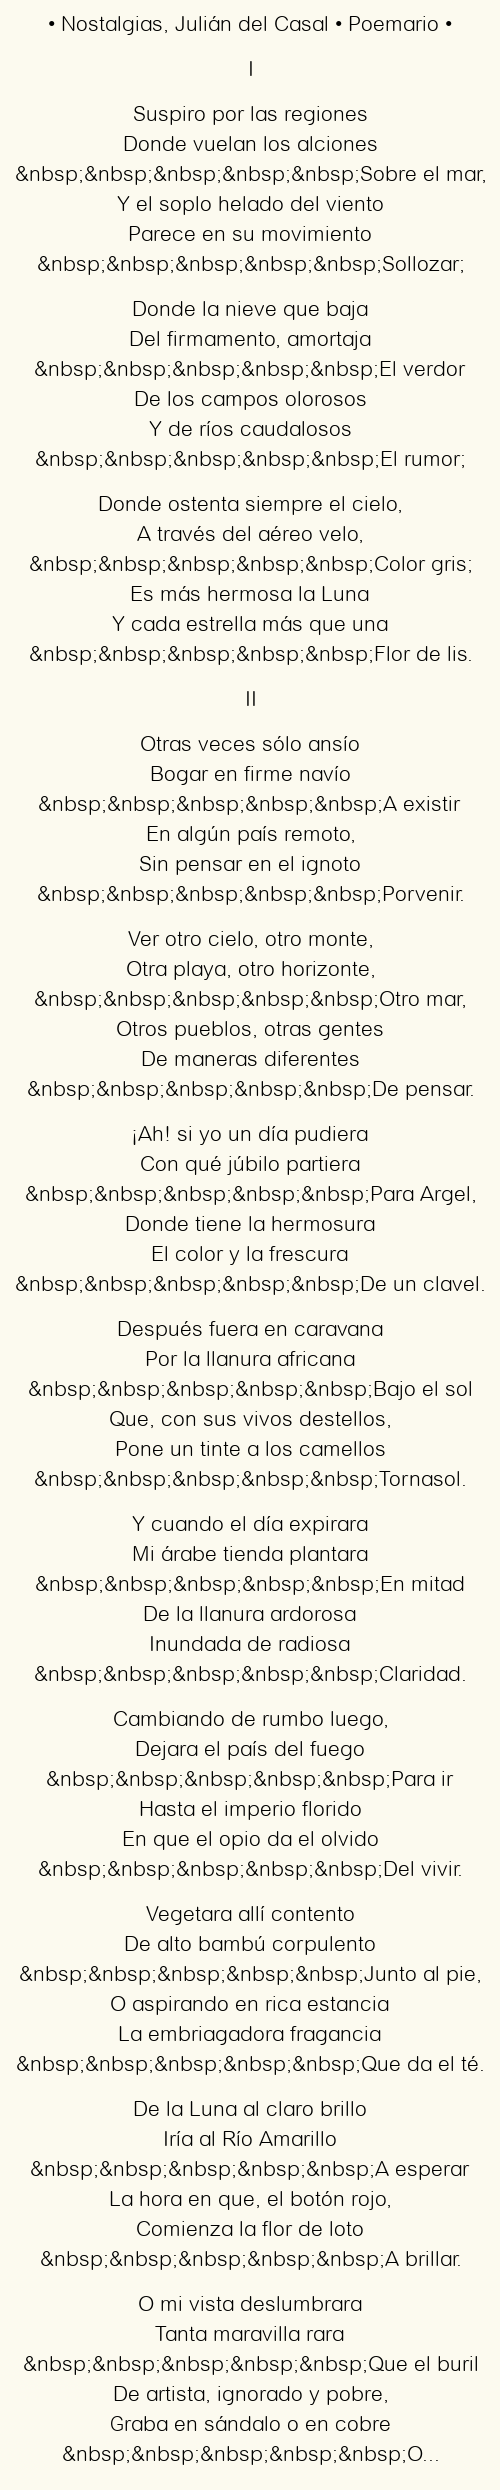 Imagen con el poema Nostalgias, por Julián del Casal